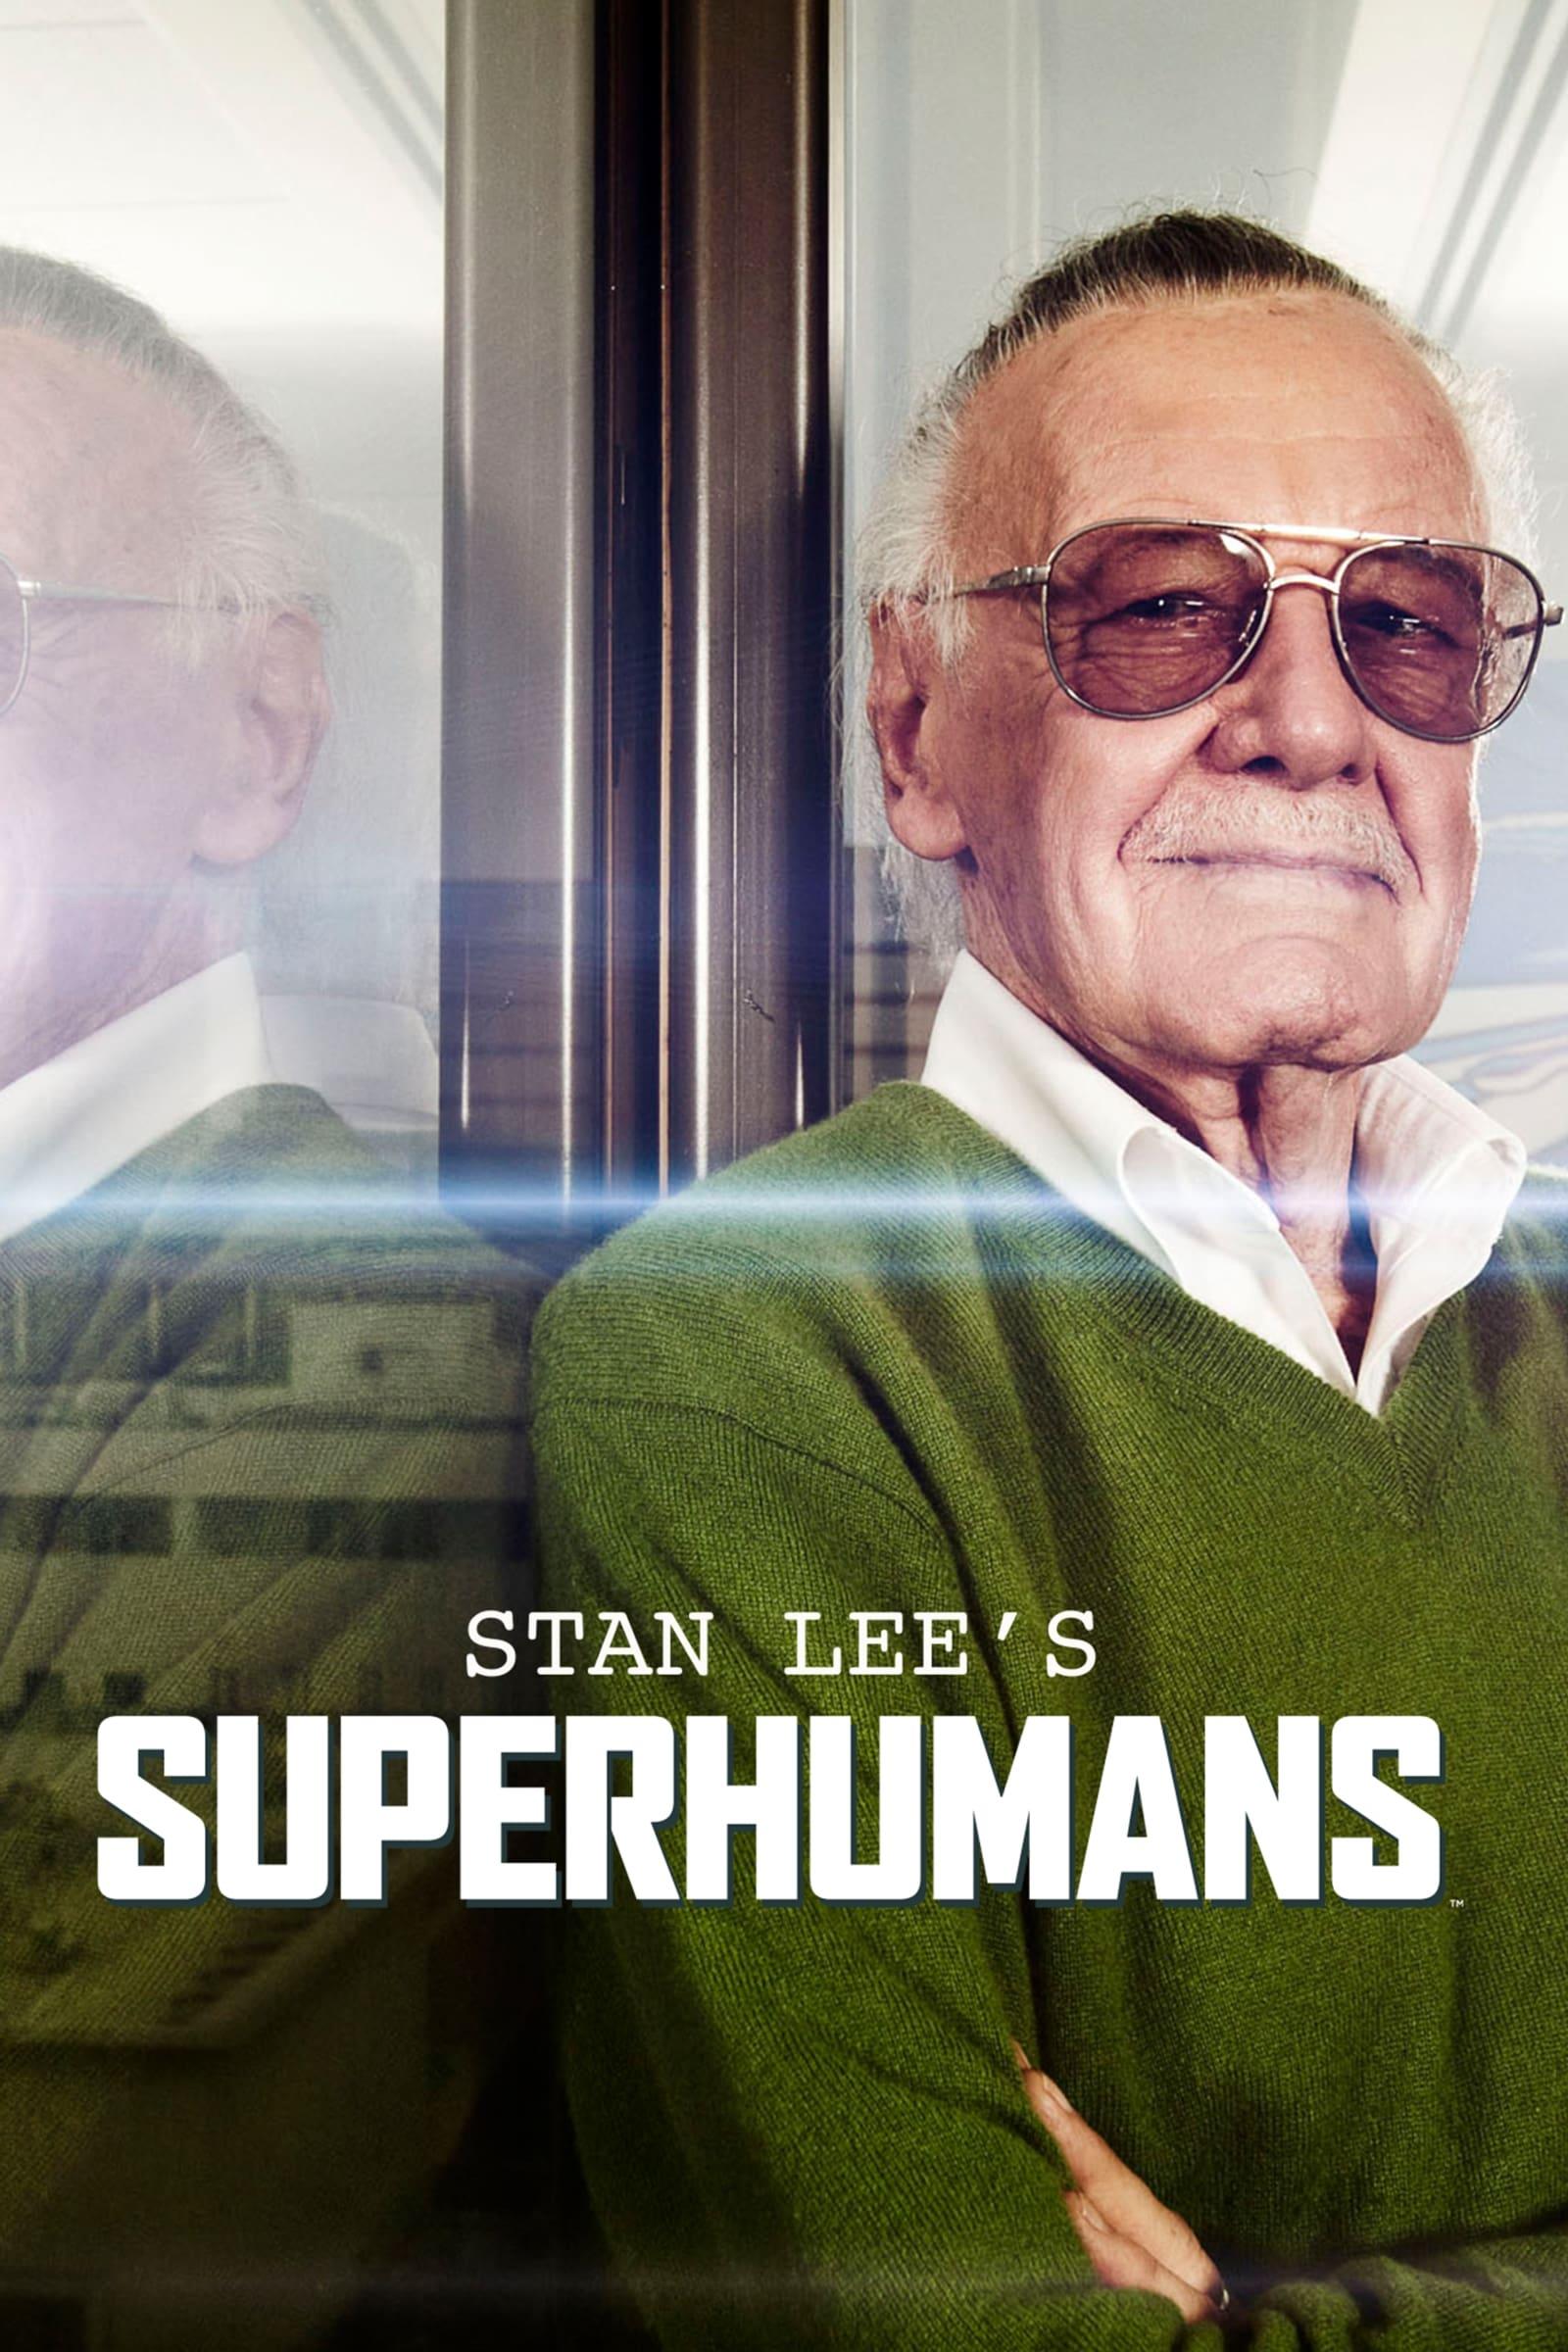 Stan Lee's Superhumans poster